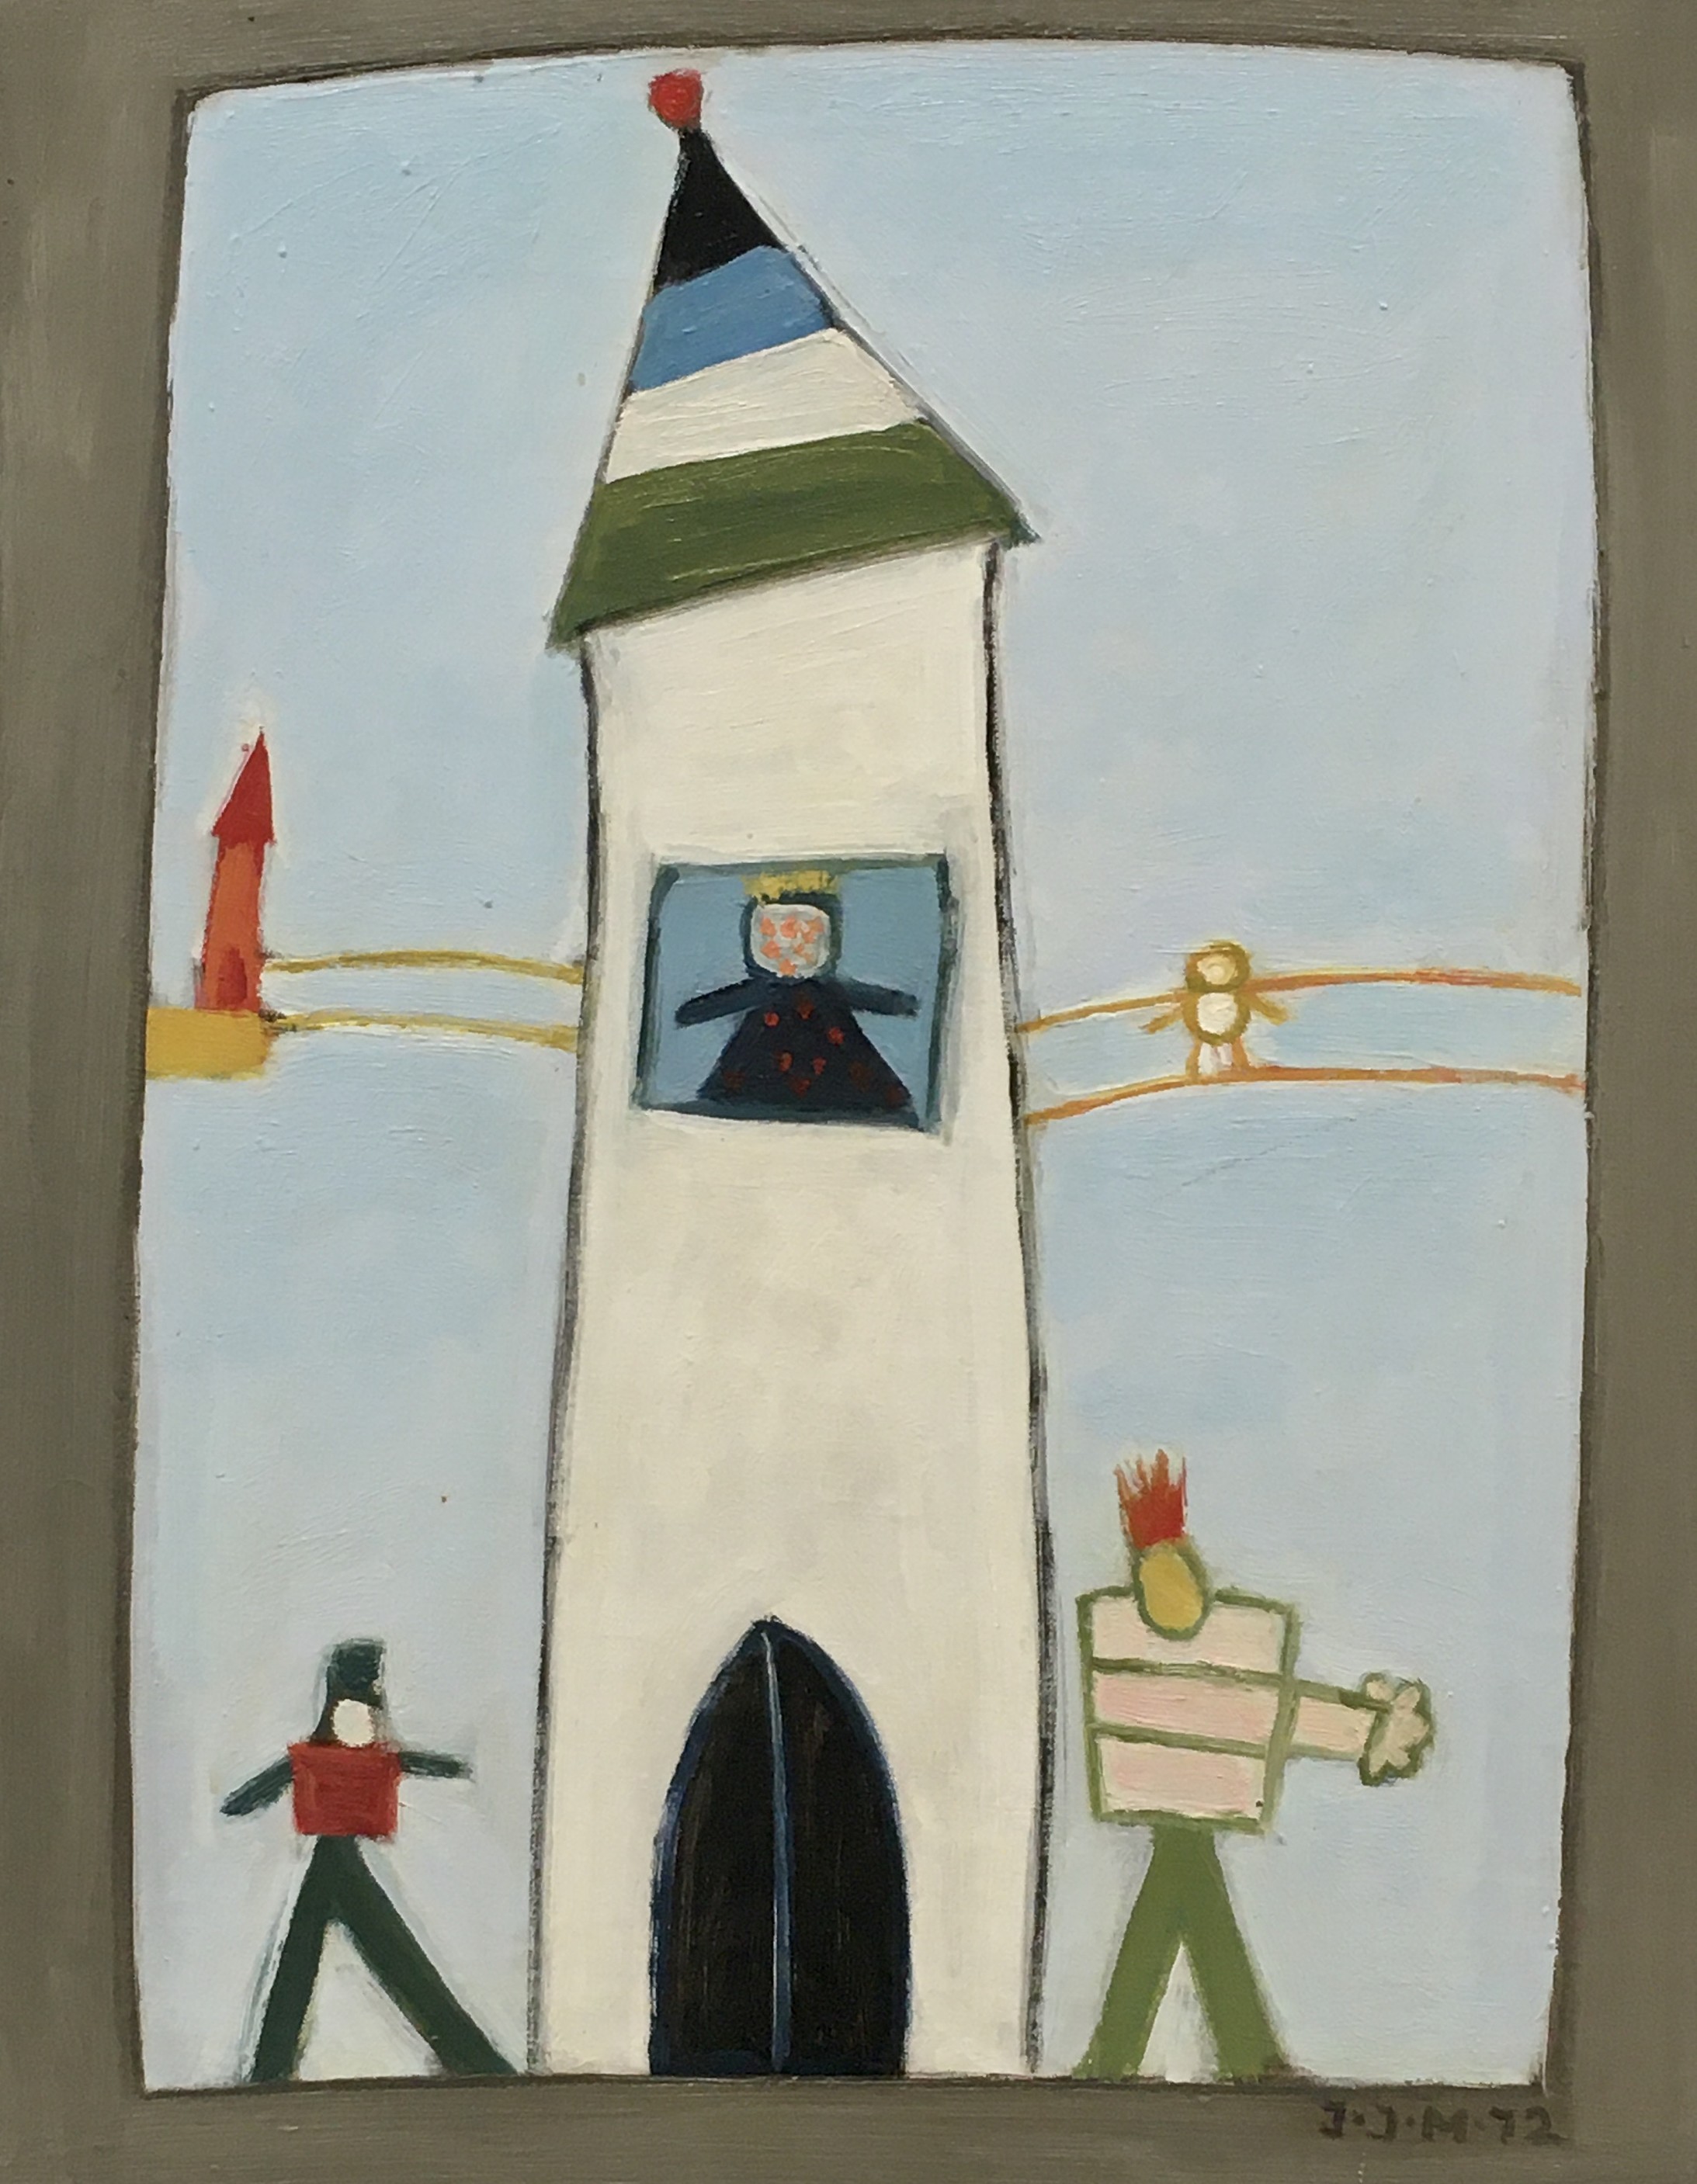 Irma Ineichen: Turm der Verliebten. Öl auf Leinwand. 1972. Kunsthaus Zug. Schenkung Christine und Peter Kamm


